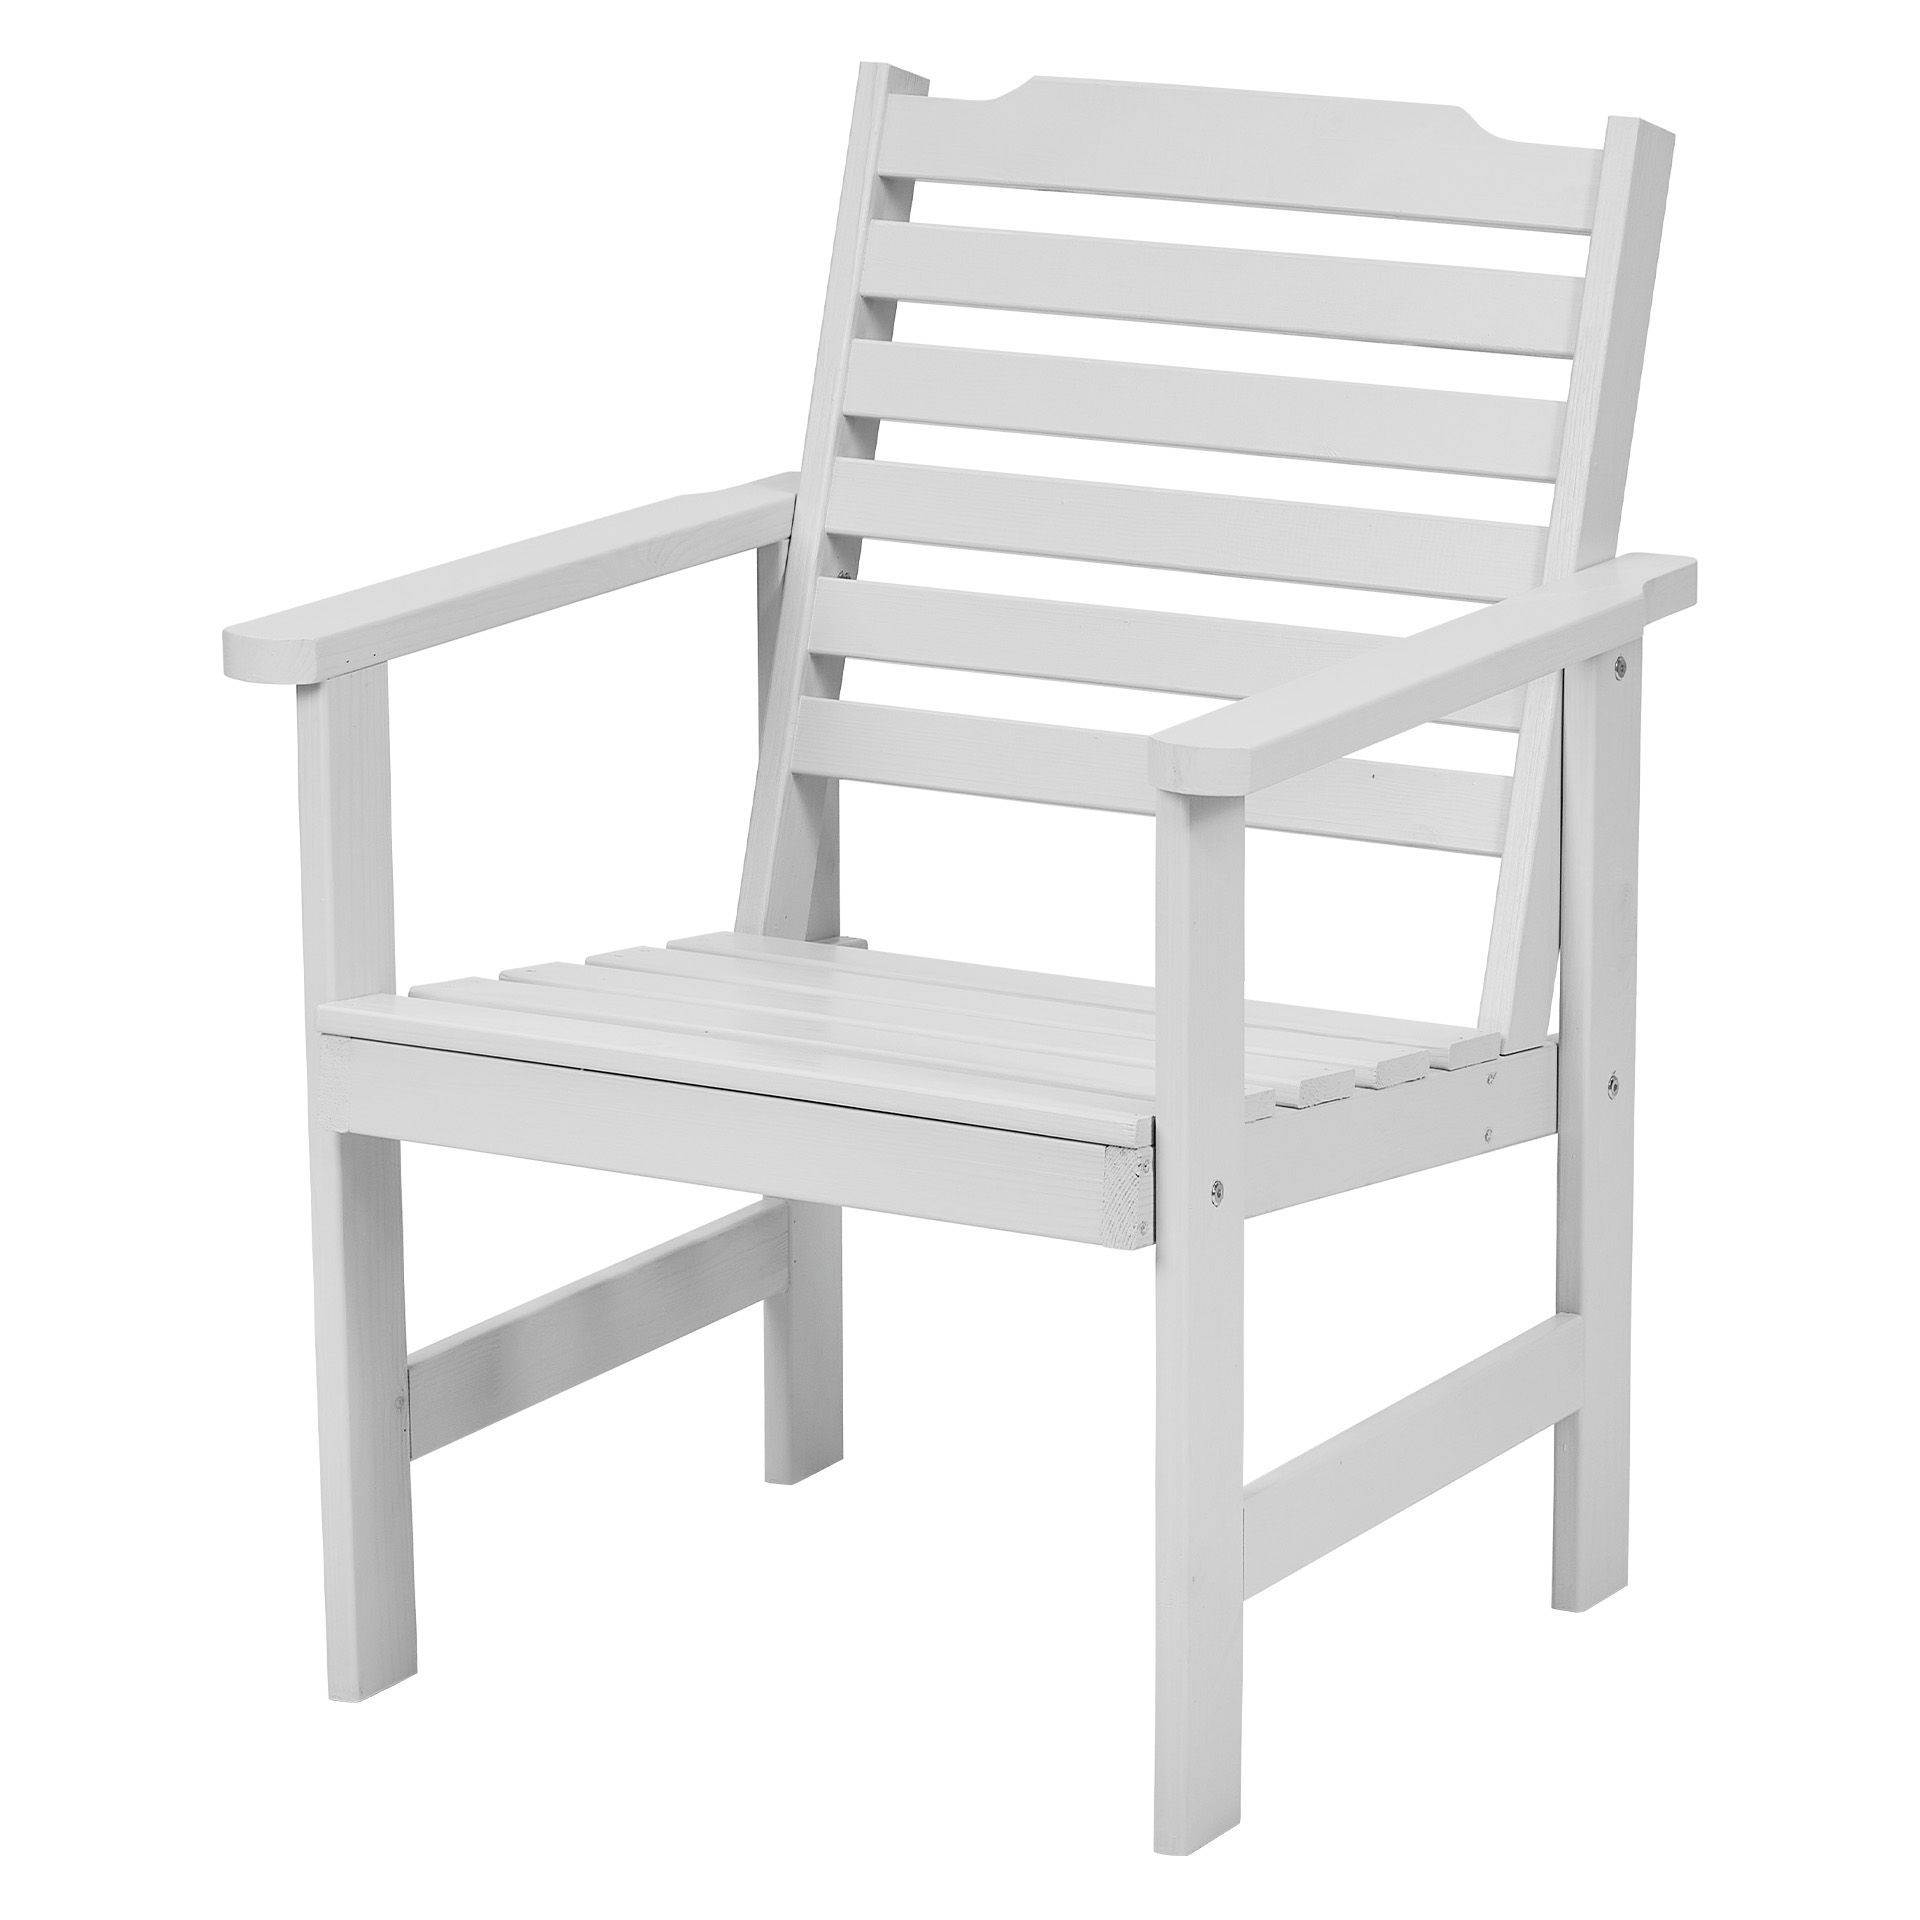 Садовое кресло Interlink Стэнхамн 700281 57х63х84см светло-серый, серый